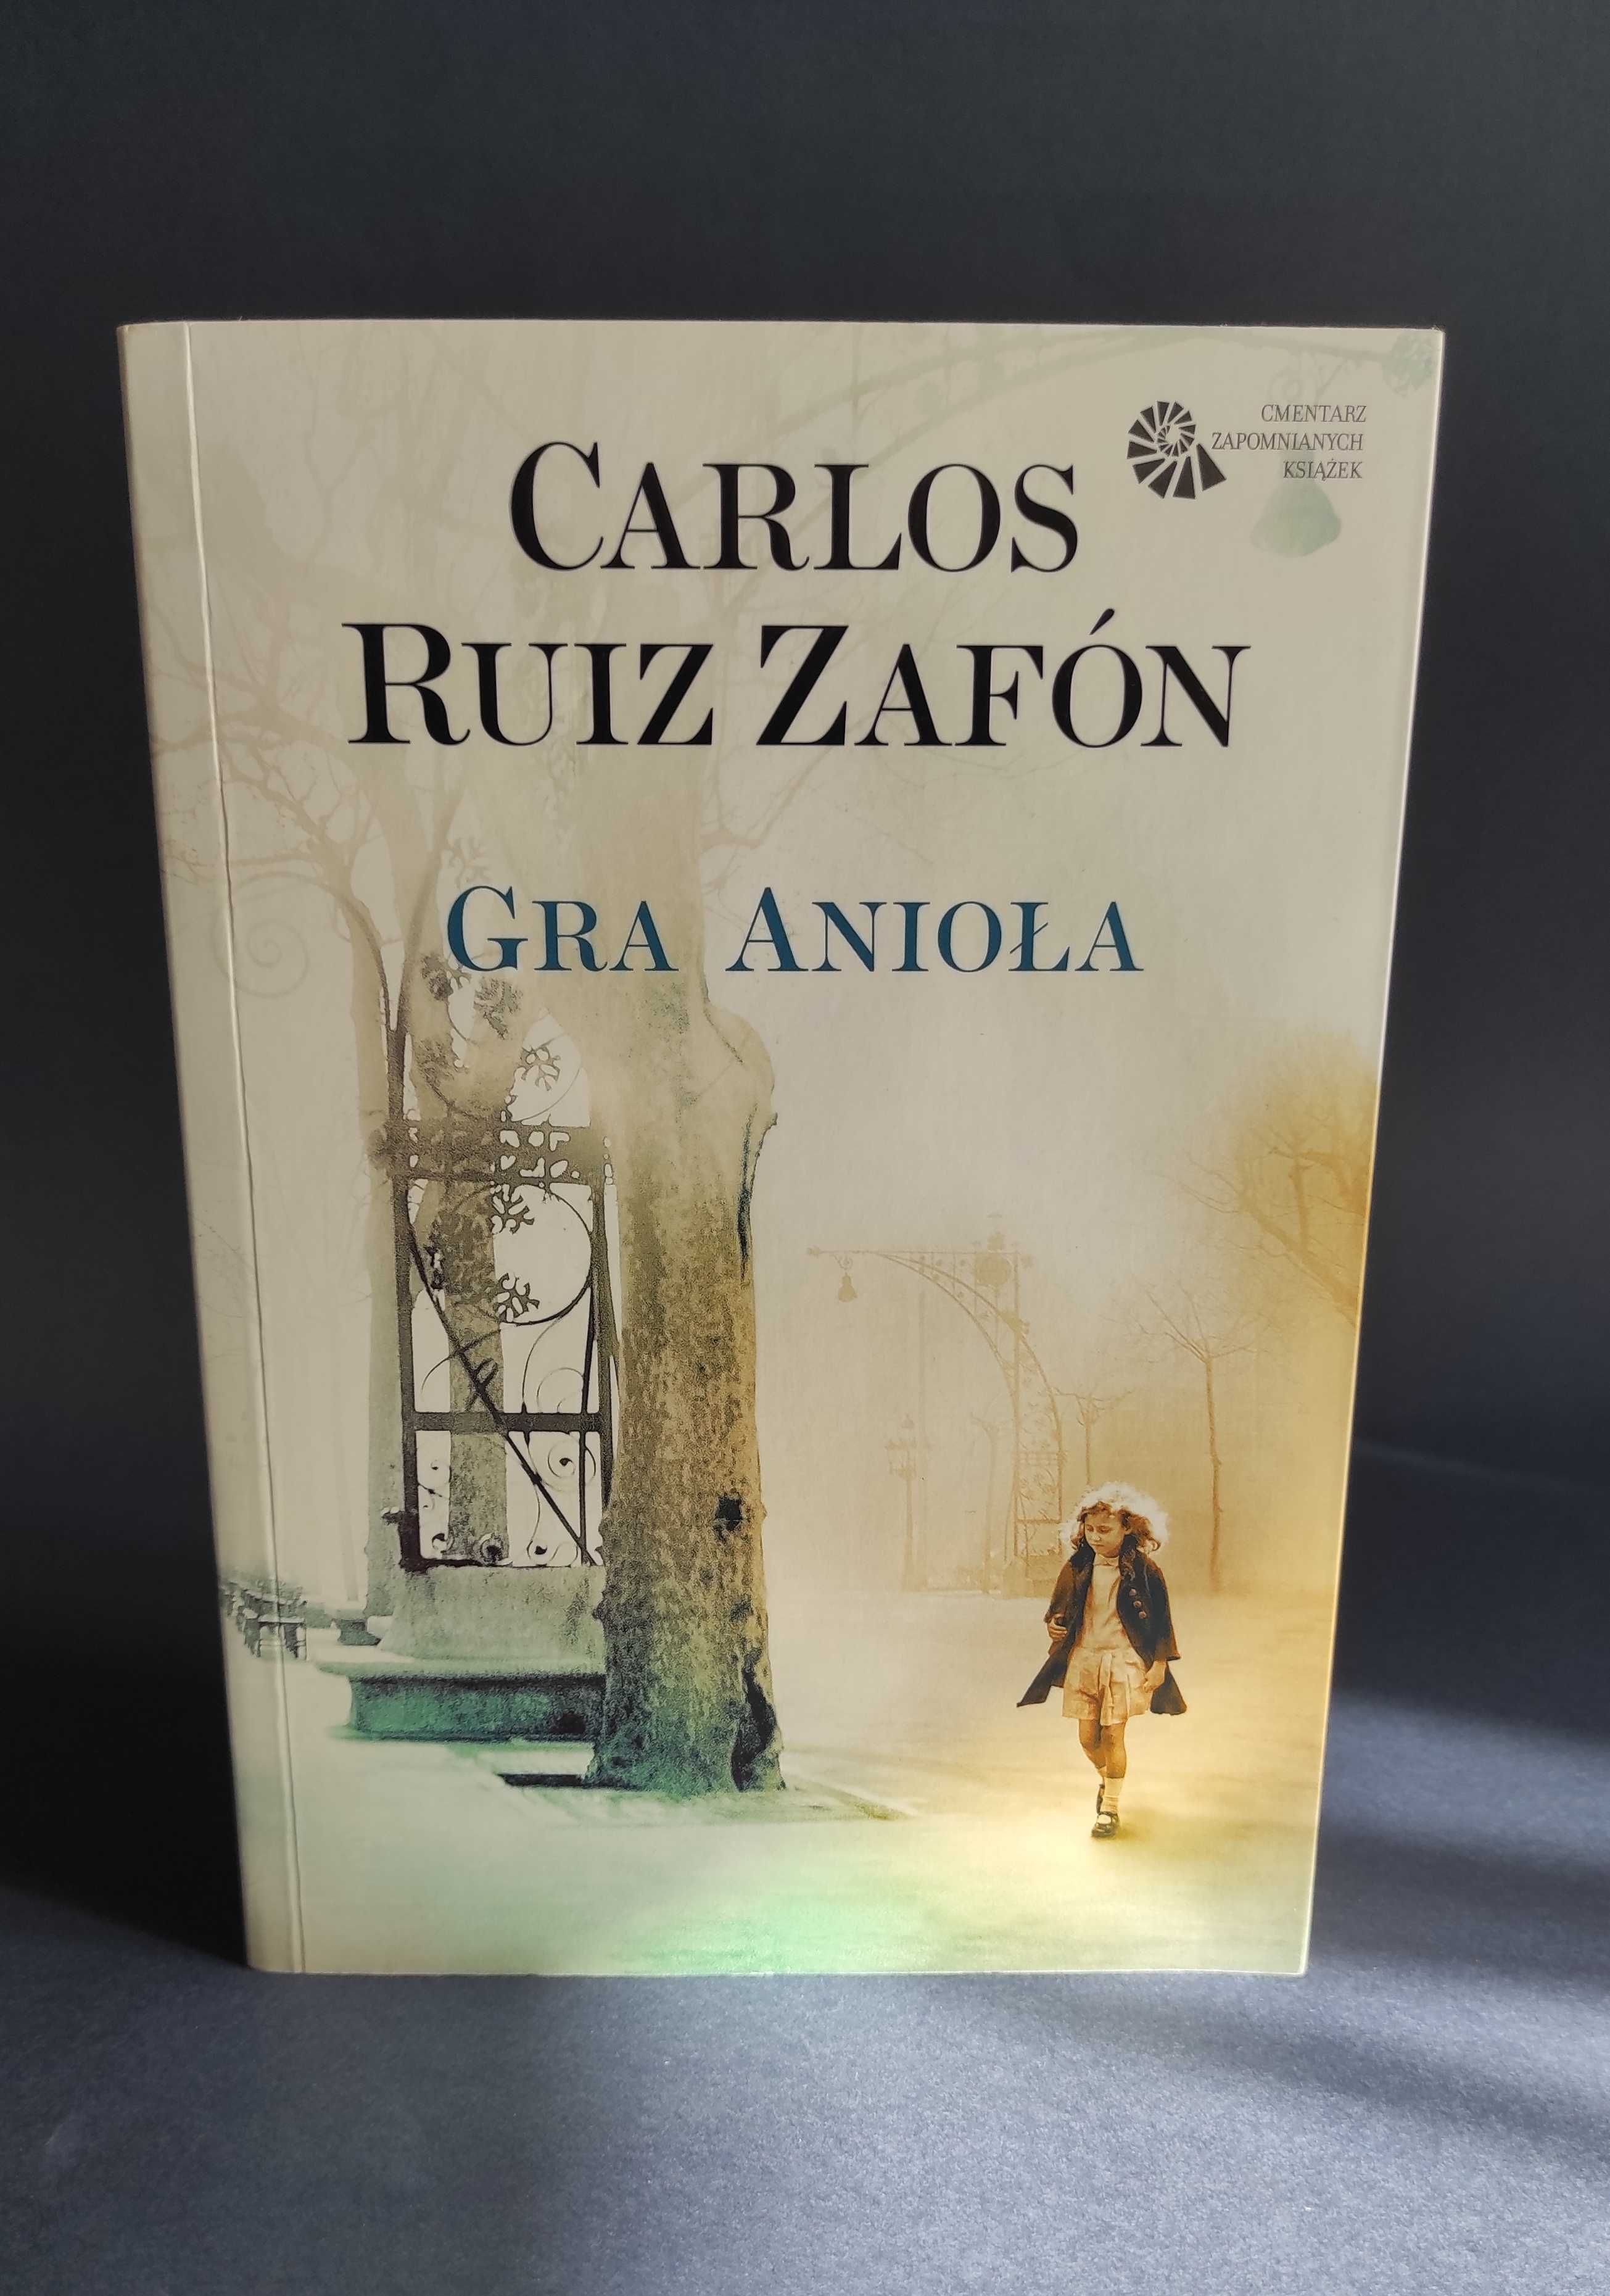 Powieść  "Gra anioła" Carlos Ruiz Zafon